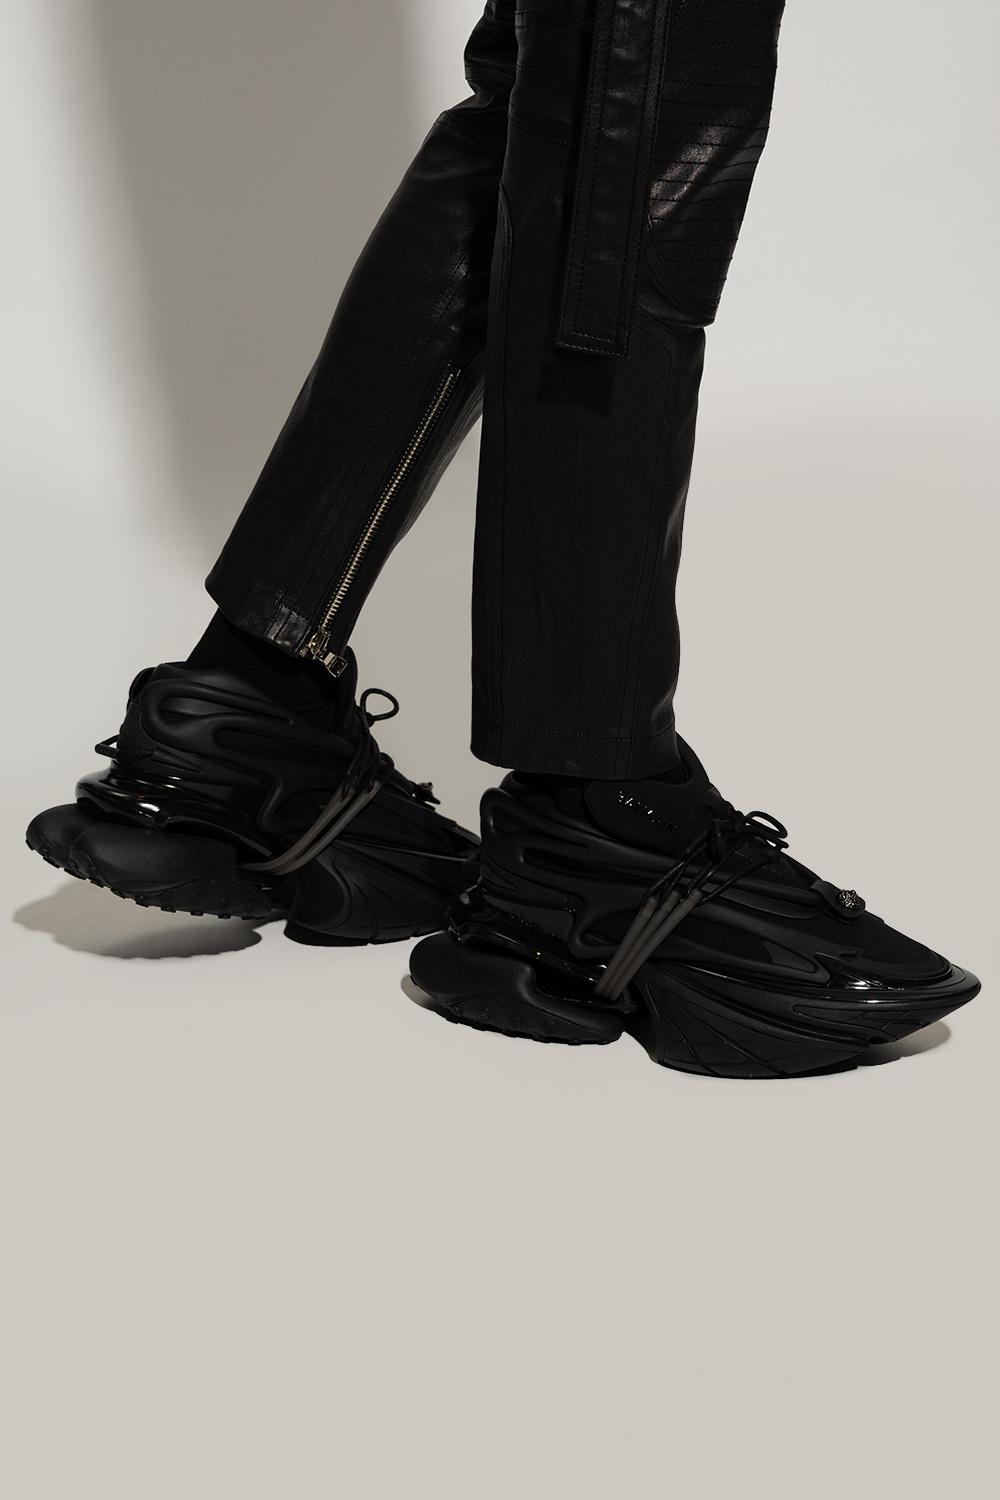 Balmain Men's Unicorn Sneakers - Black - Low-top Sneakers - 8